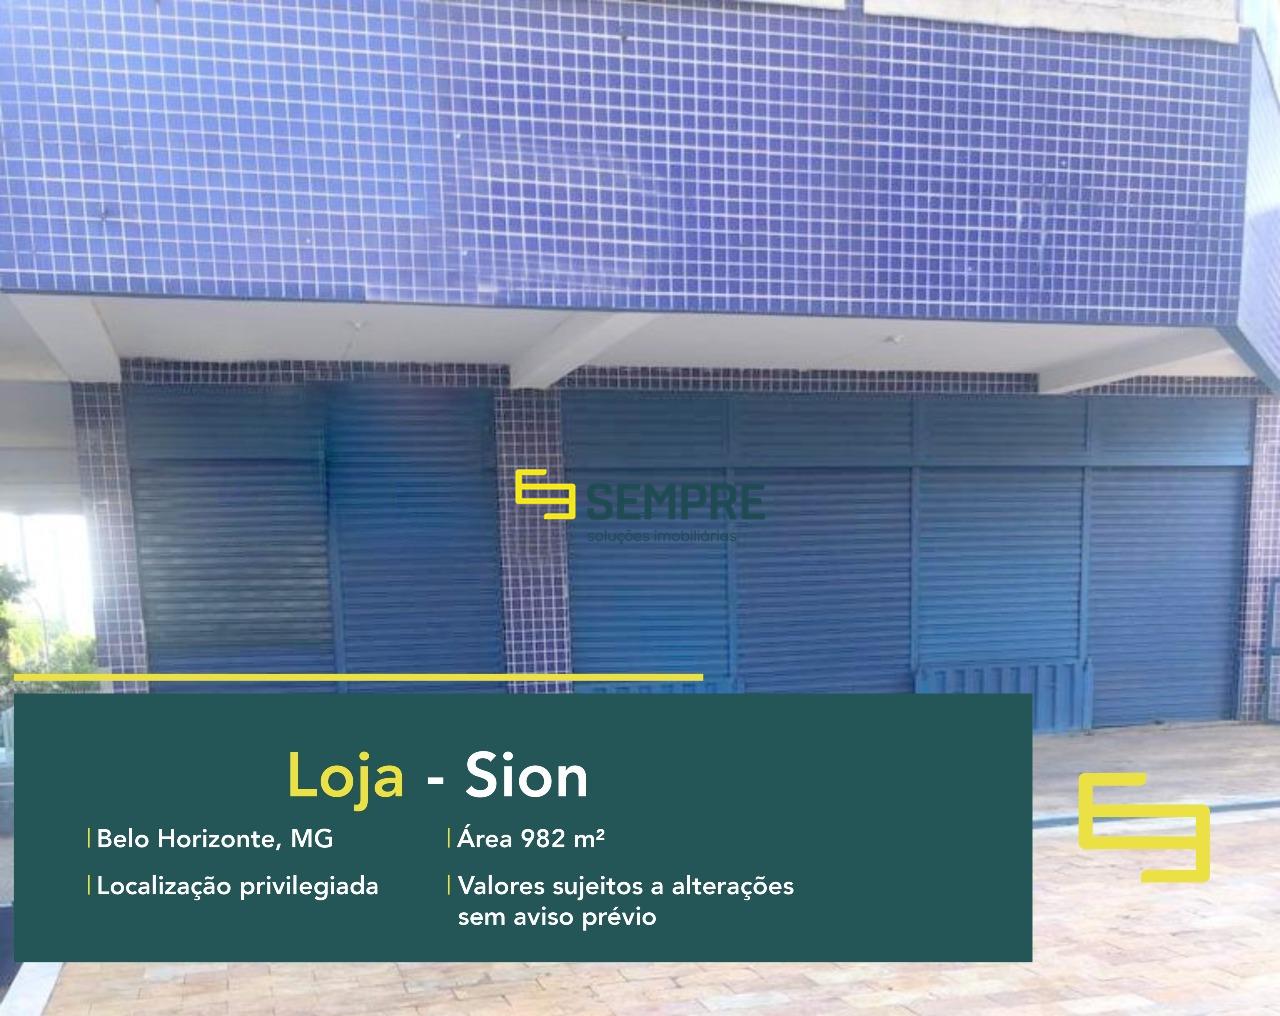 Loja para alugar no Sion em Belo Horizonte em excelente localização. O ponto comercial para alugar, conta sobretudo, com área de 982 m².